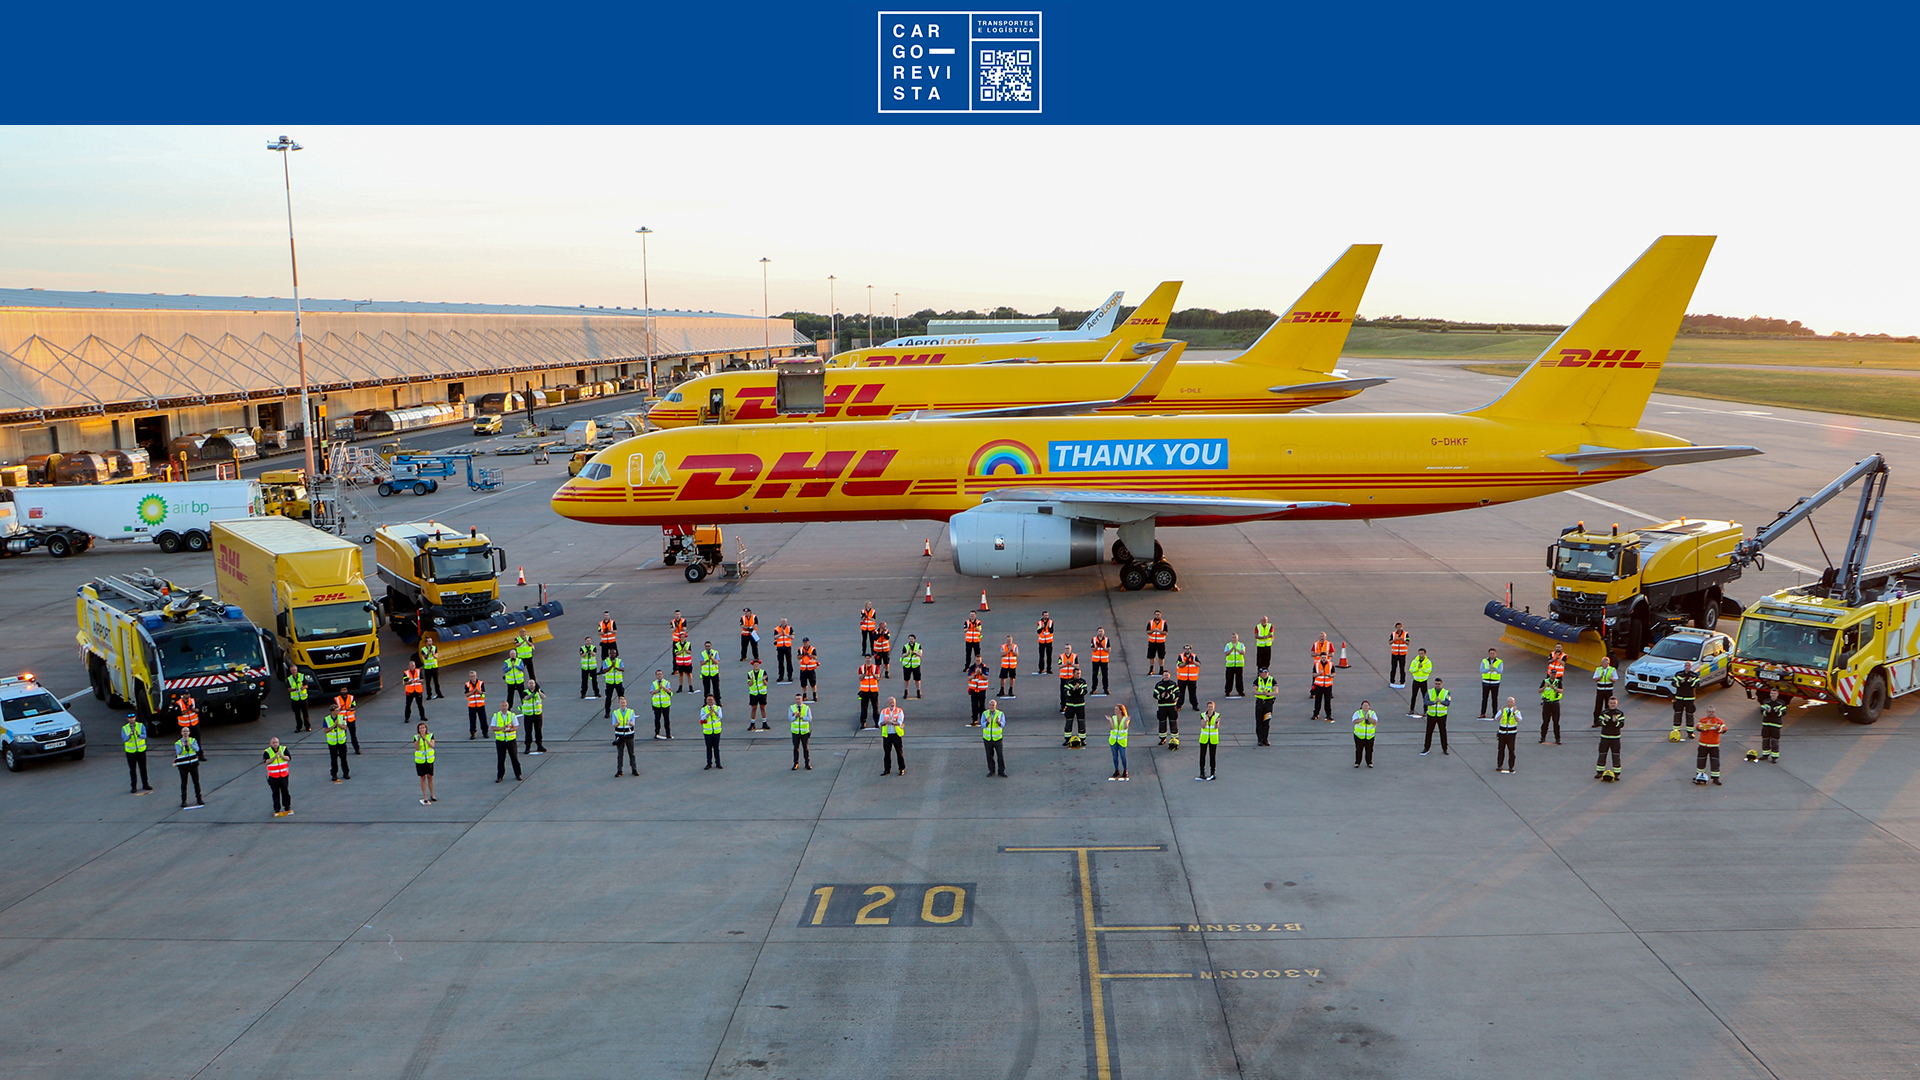  DHL Express reconhecida como uma das ‘Melhores Empresas para Trabalhar’ em Portugal